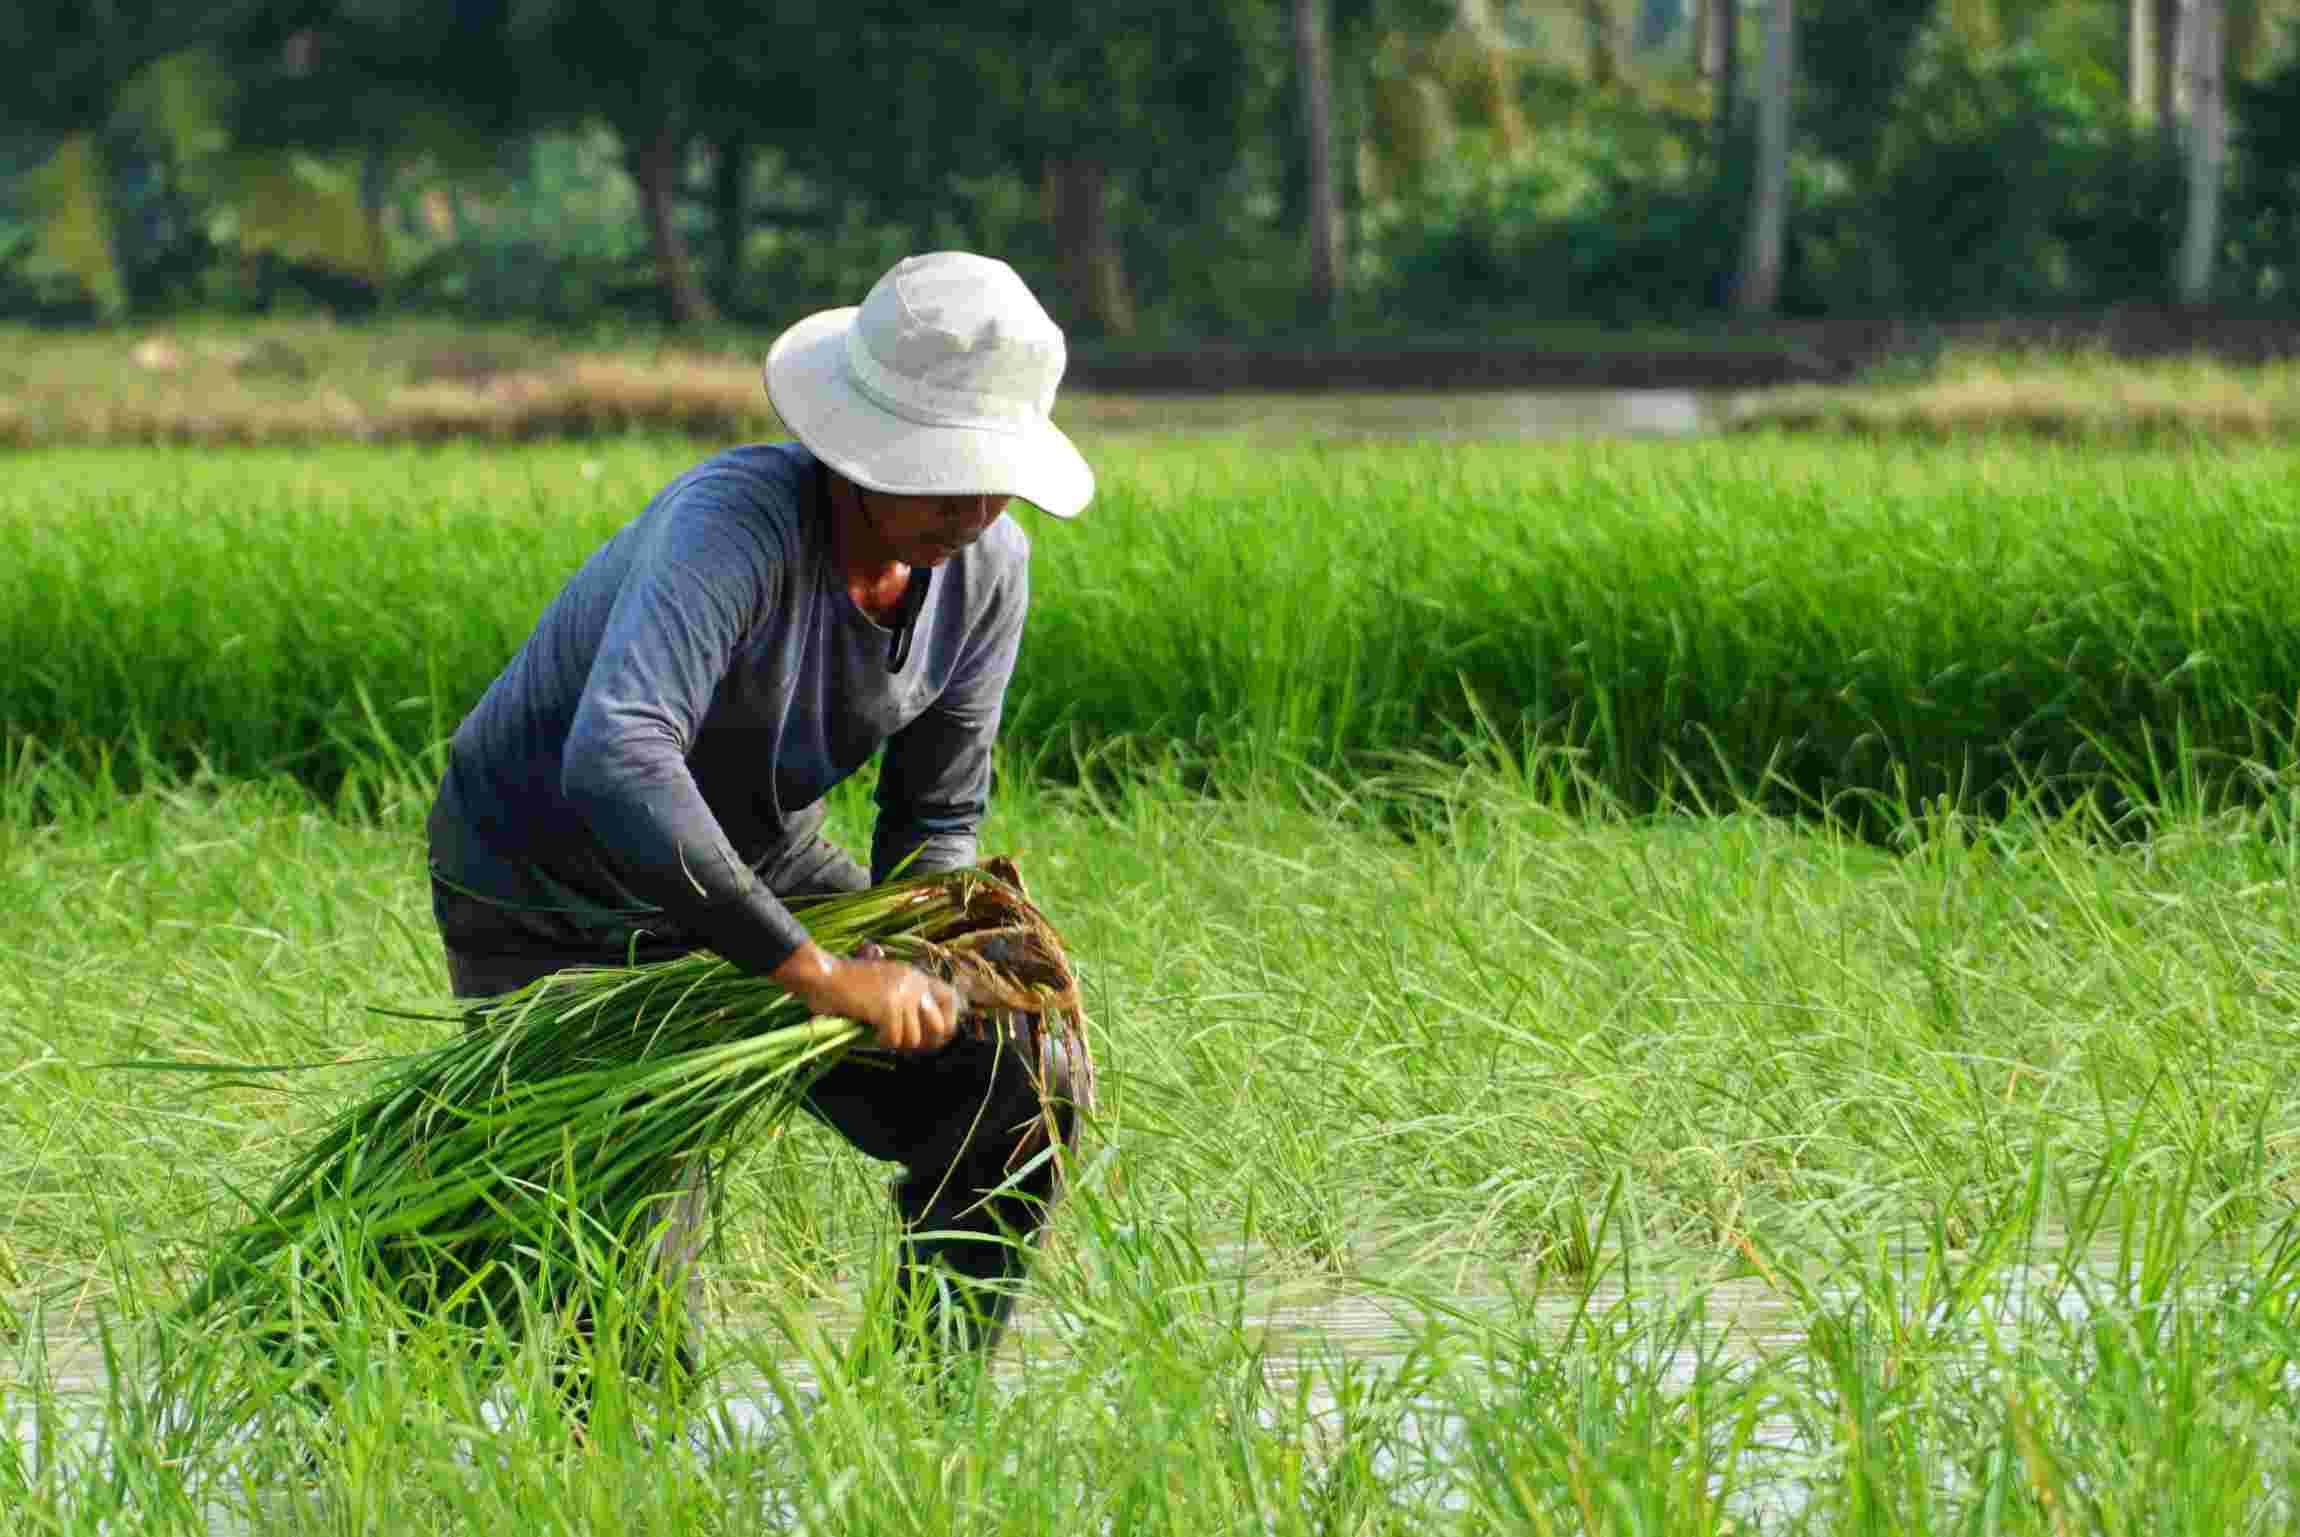 Lúa Tài Nguyên là giống lúa đặc trưng của tỉnh Sóc Trăng được trồng nhiều ở huyện Thạnh Trị và một phần ở huyện Mỹ Xuyên.